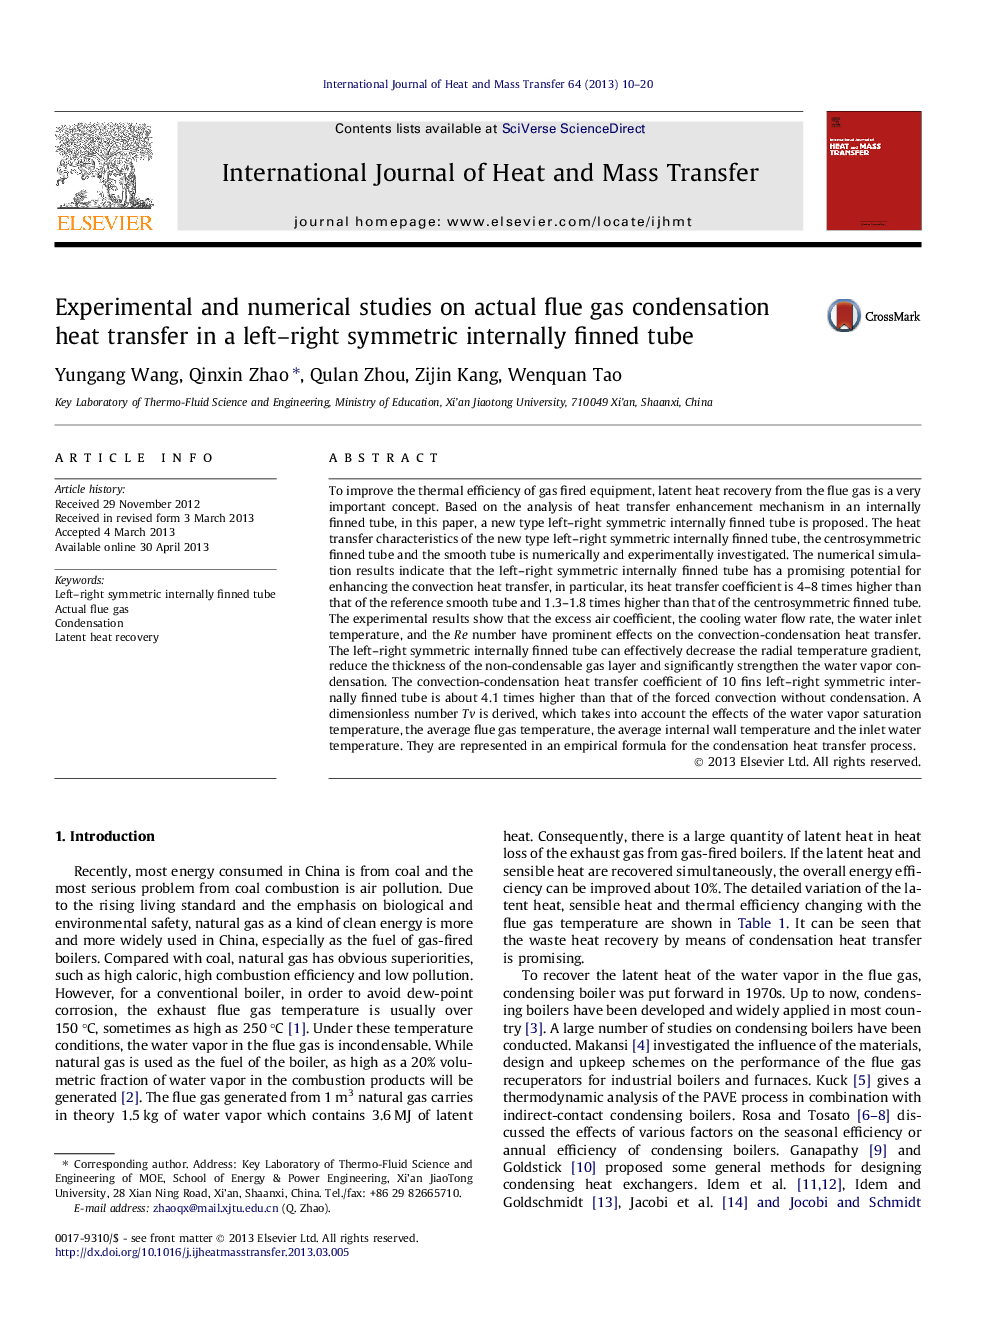 مطالعات تجربی و عددی در انتقال گرمایی متراکم گاز مستقیم در یک لوله نیمه راست چپ و راست متقاطع داخلی 